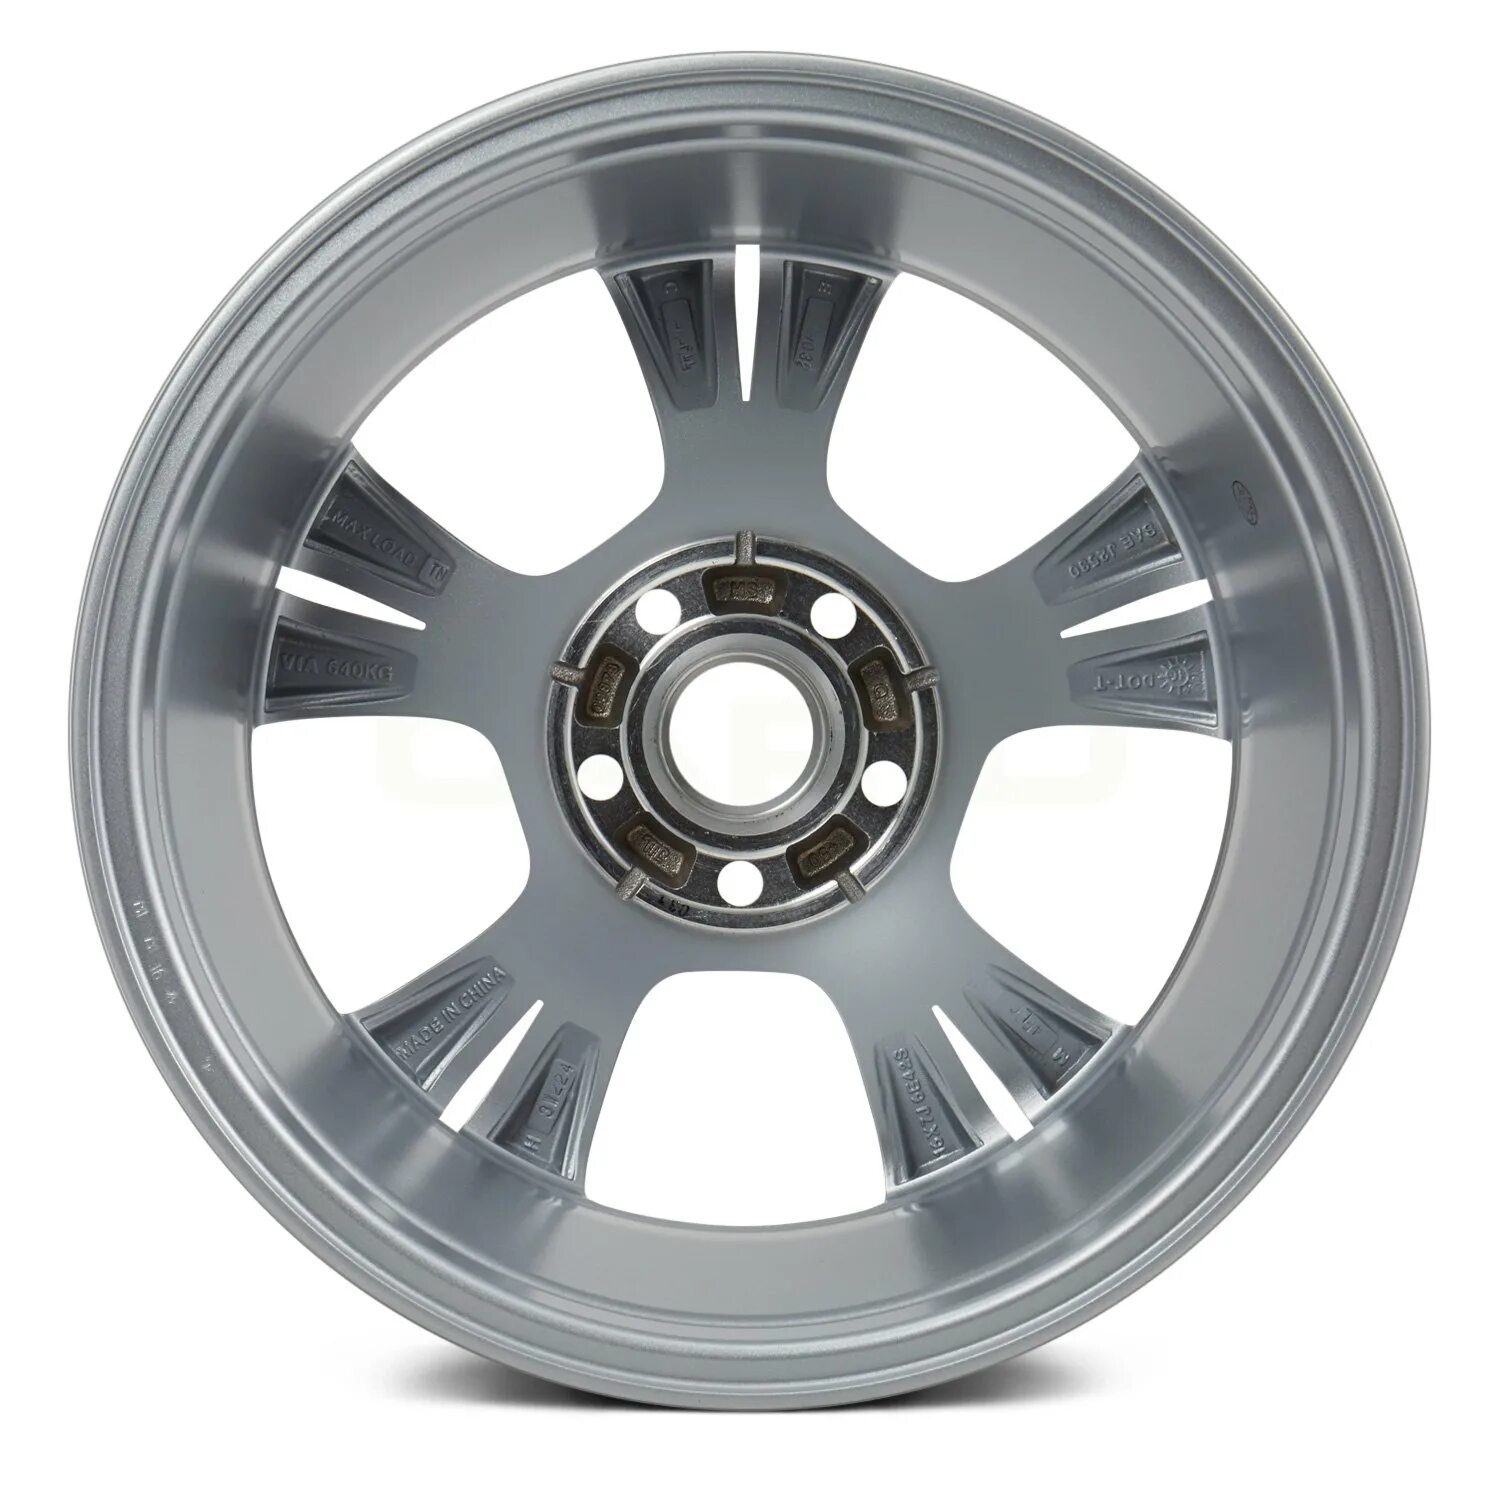 5-Spoke Silver Alloy Wheel -. Алекс Replica Wheels.